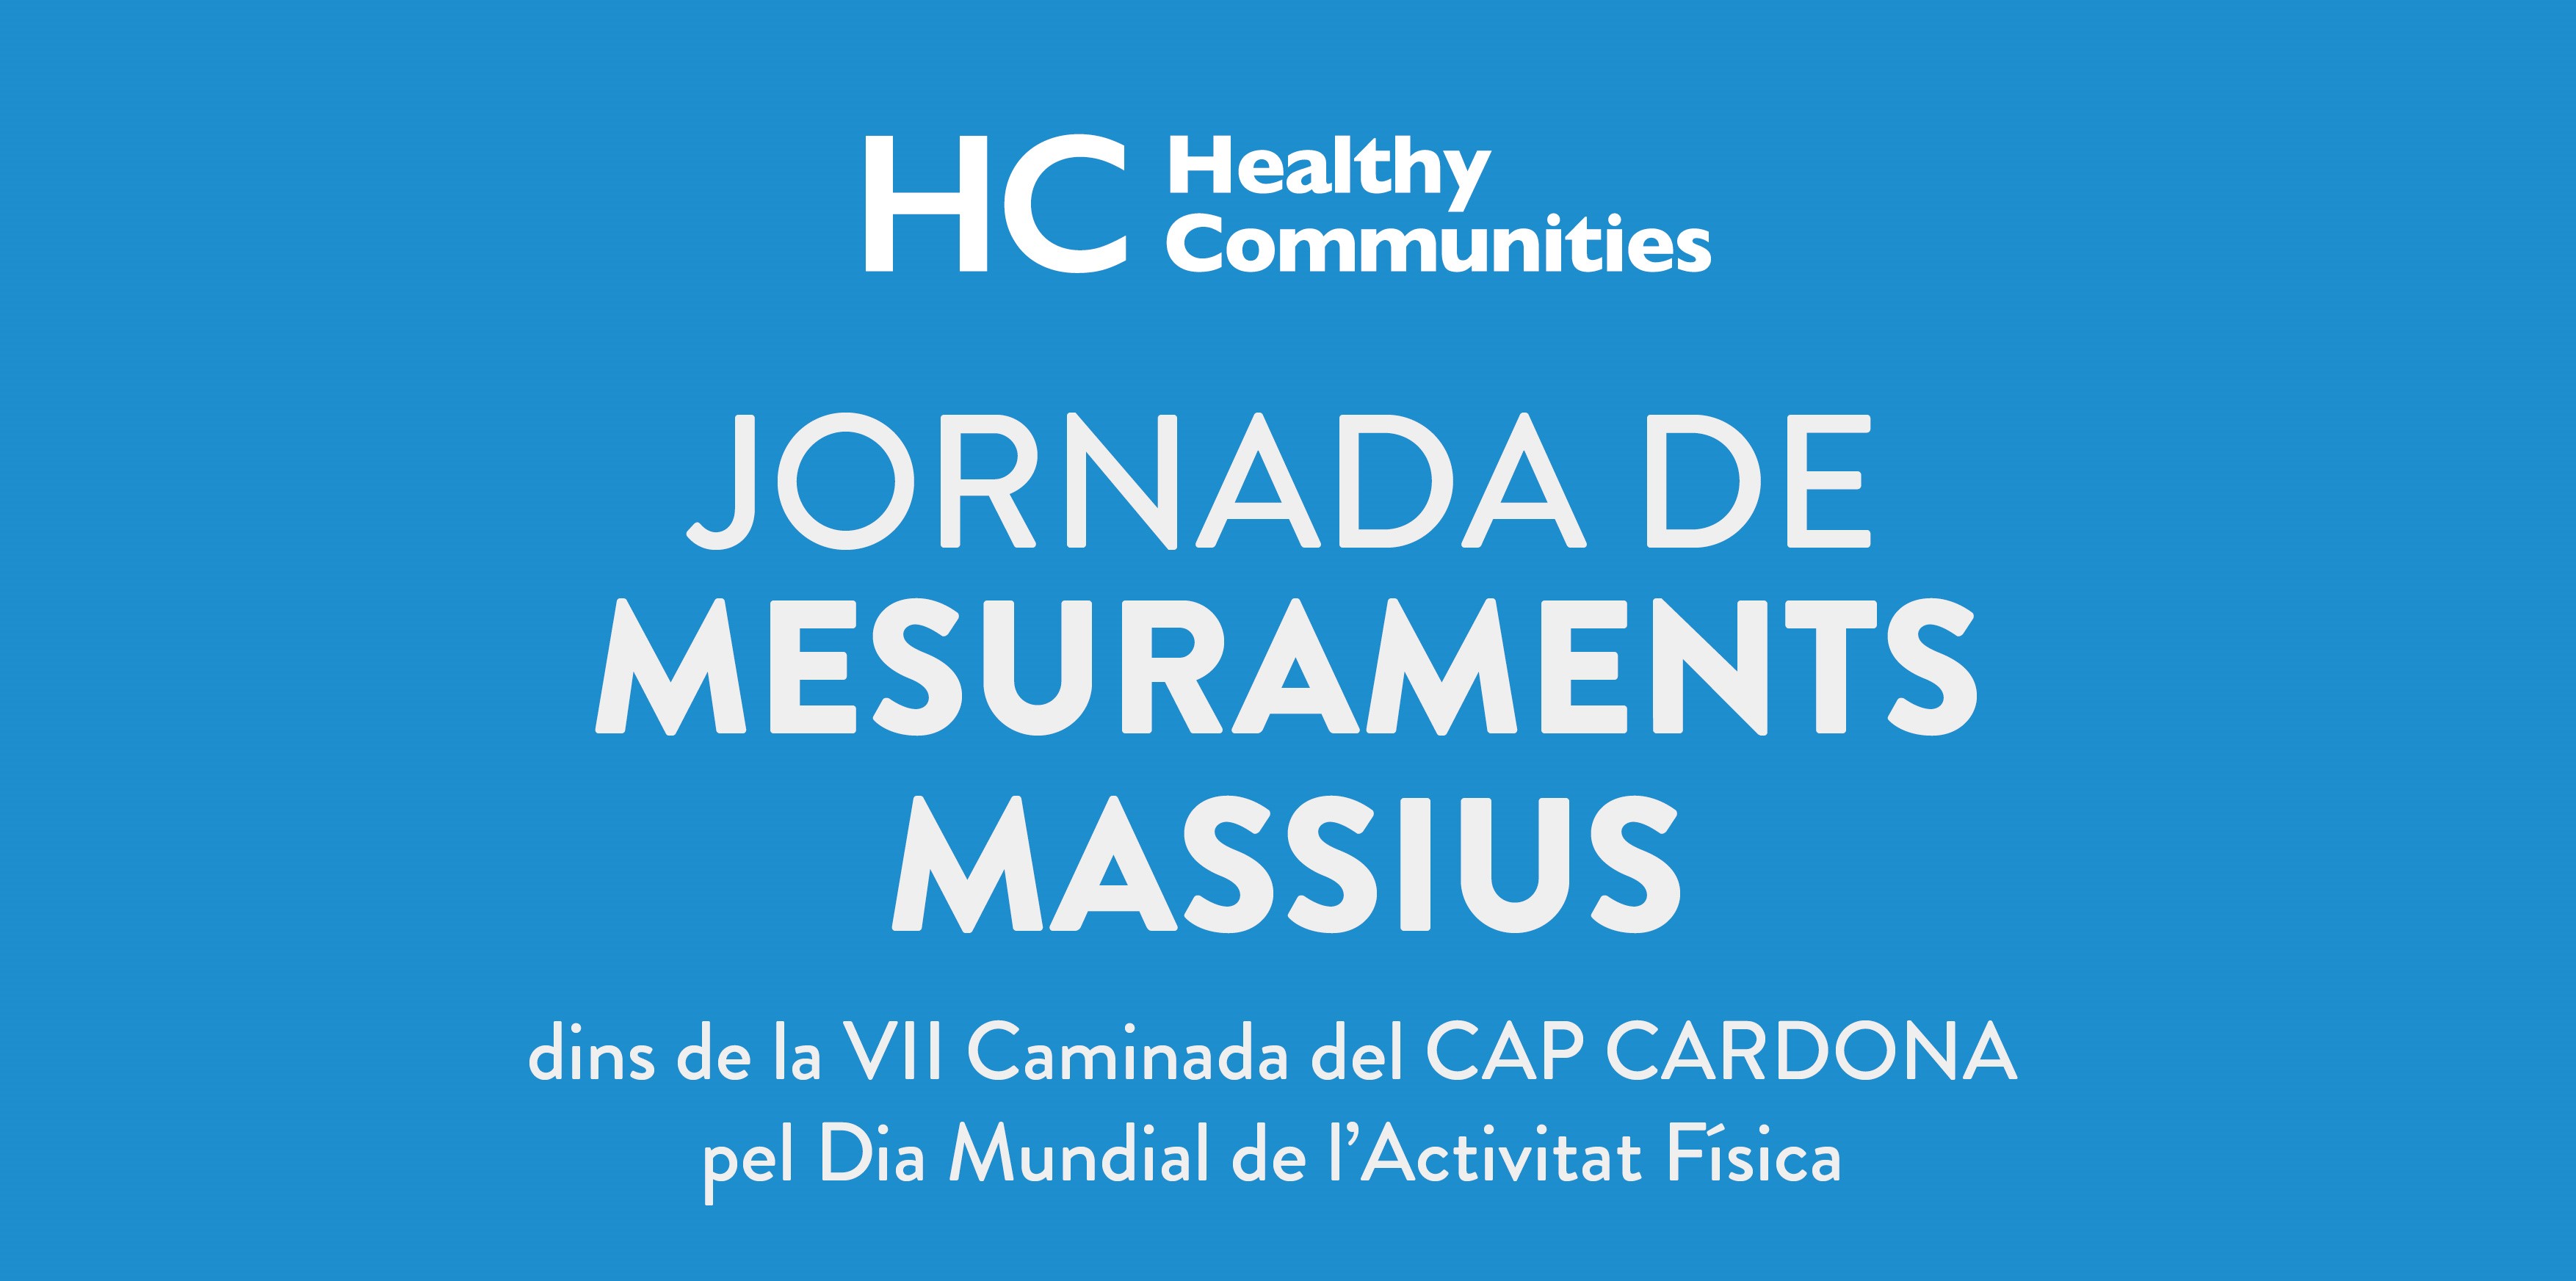 La Fundació SHE  organitza una jornada de mesuraments massius a Cardona pel projecte Healthy Communities  